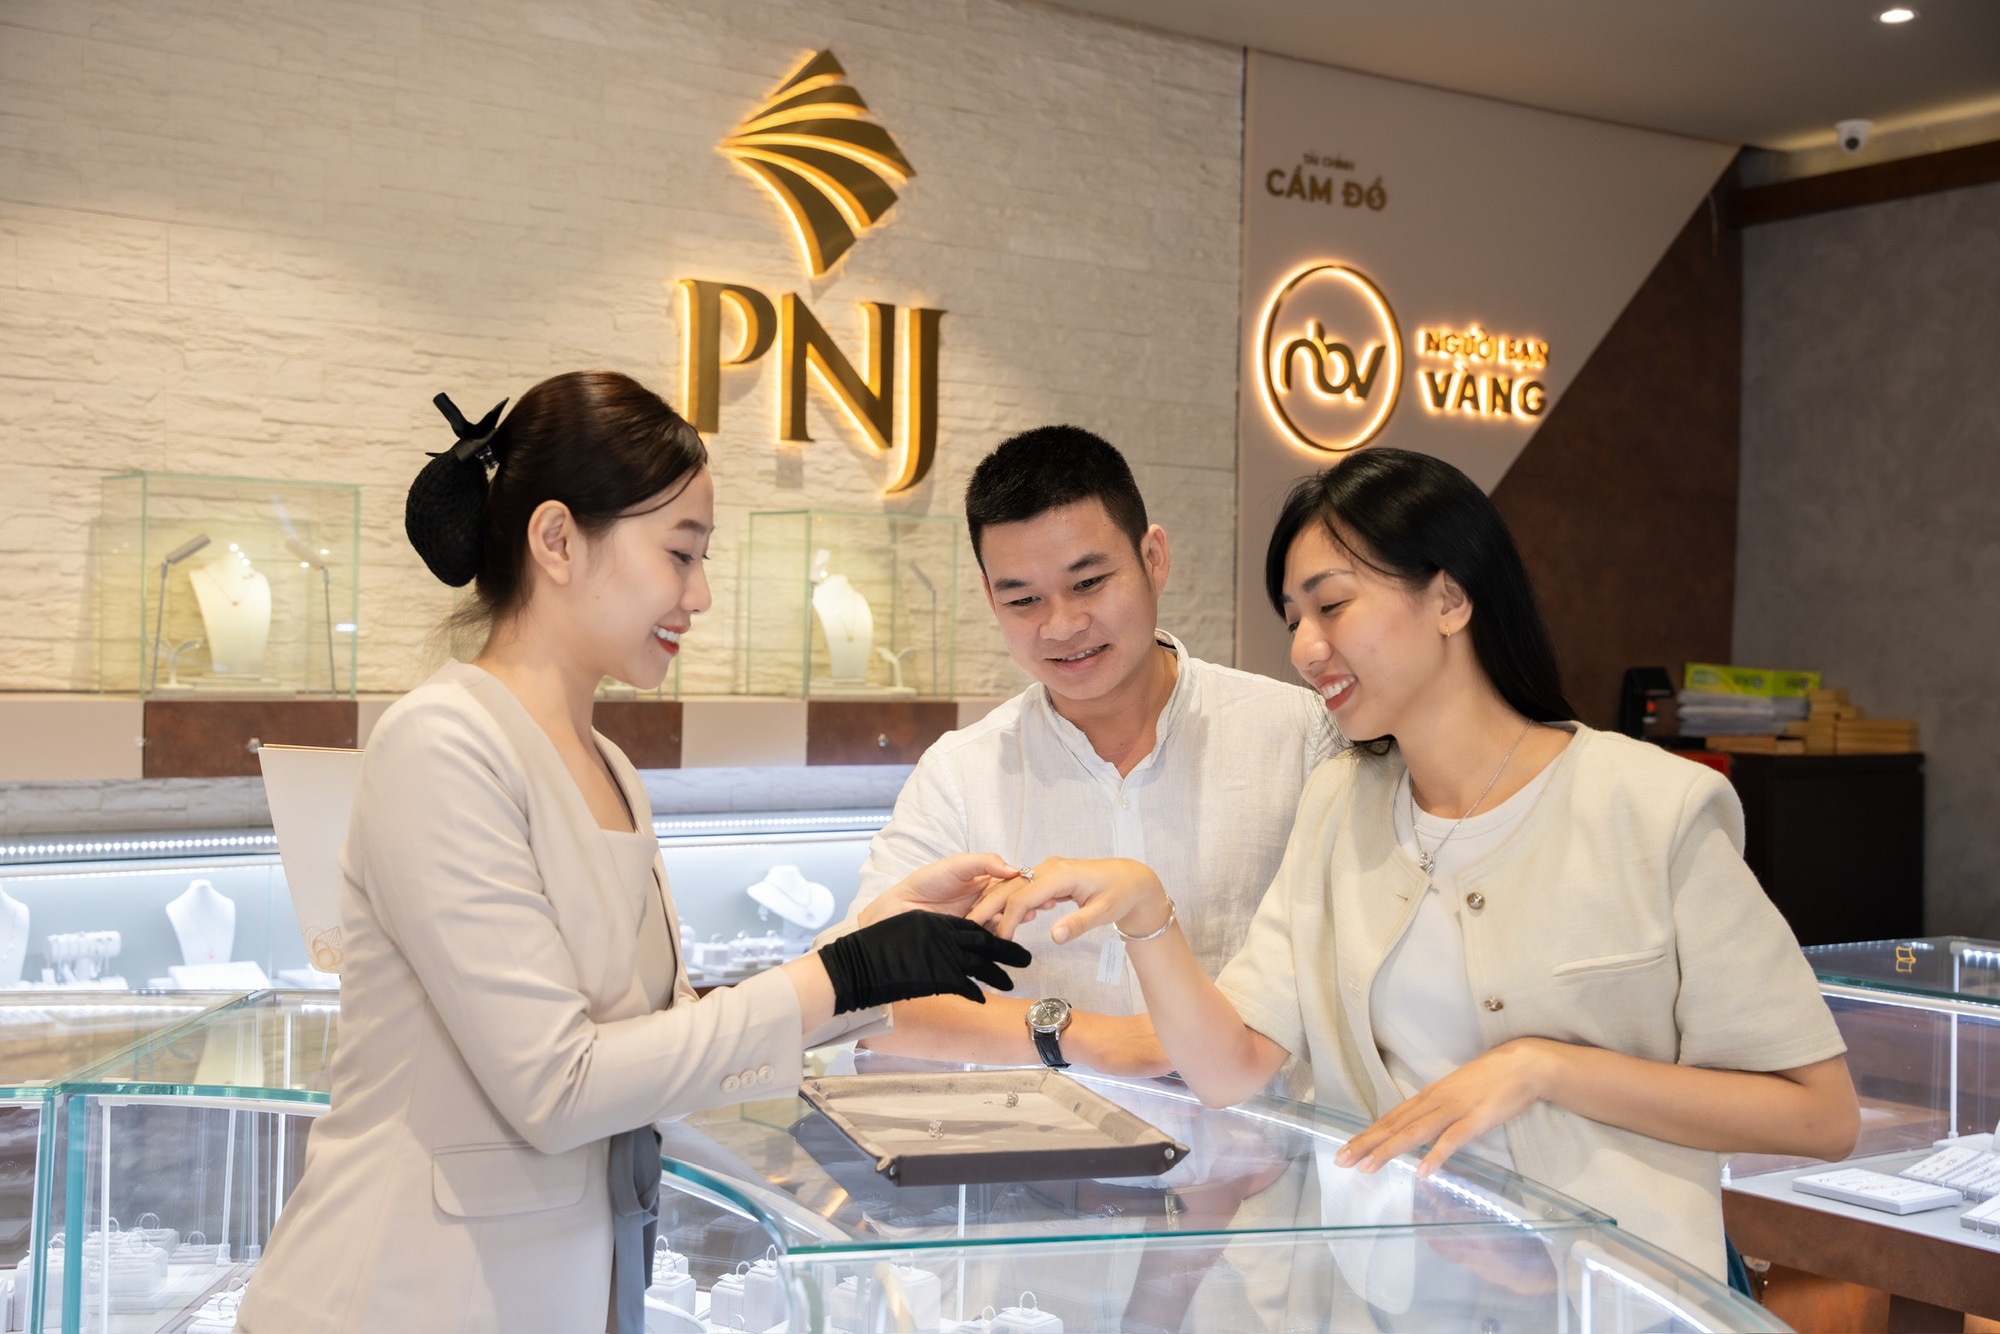 PNJ là doanh nghiệp Fortune 500 của Đông Nam Á - Ảnh: Việt Hùng